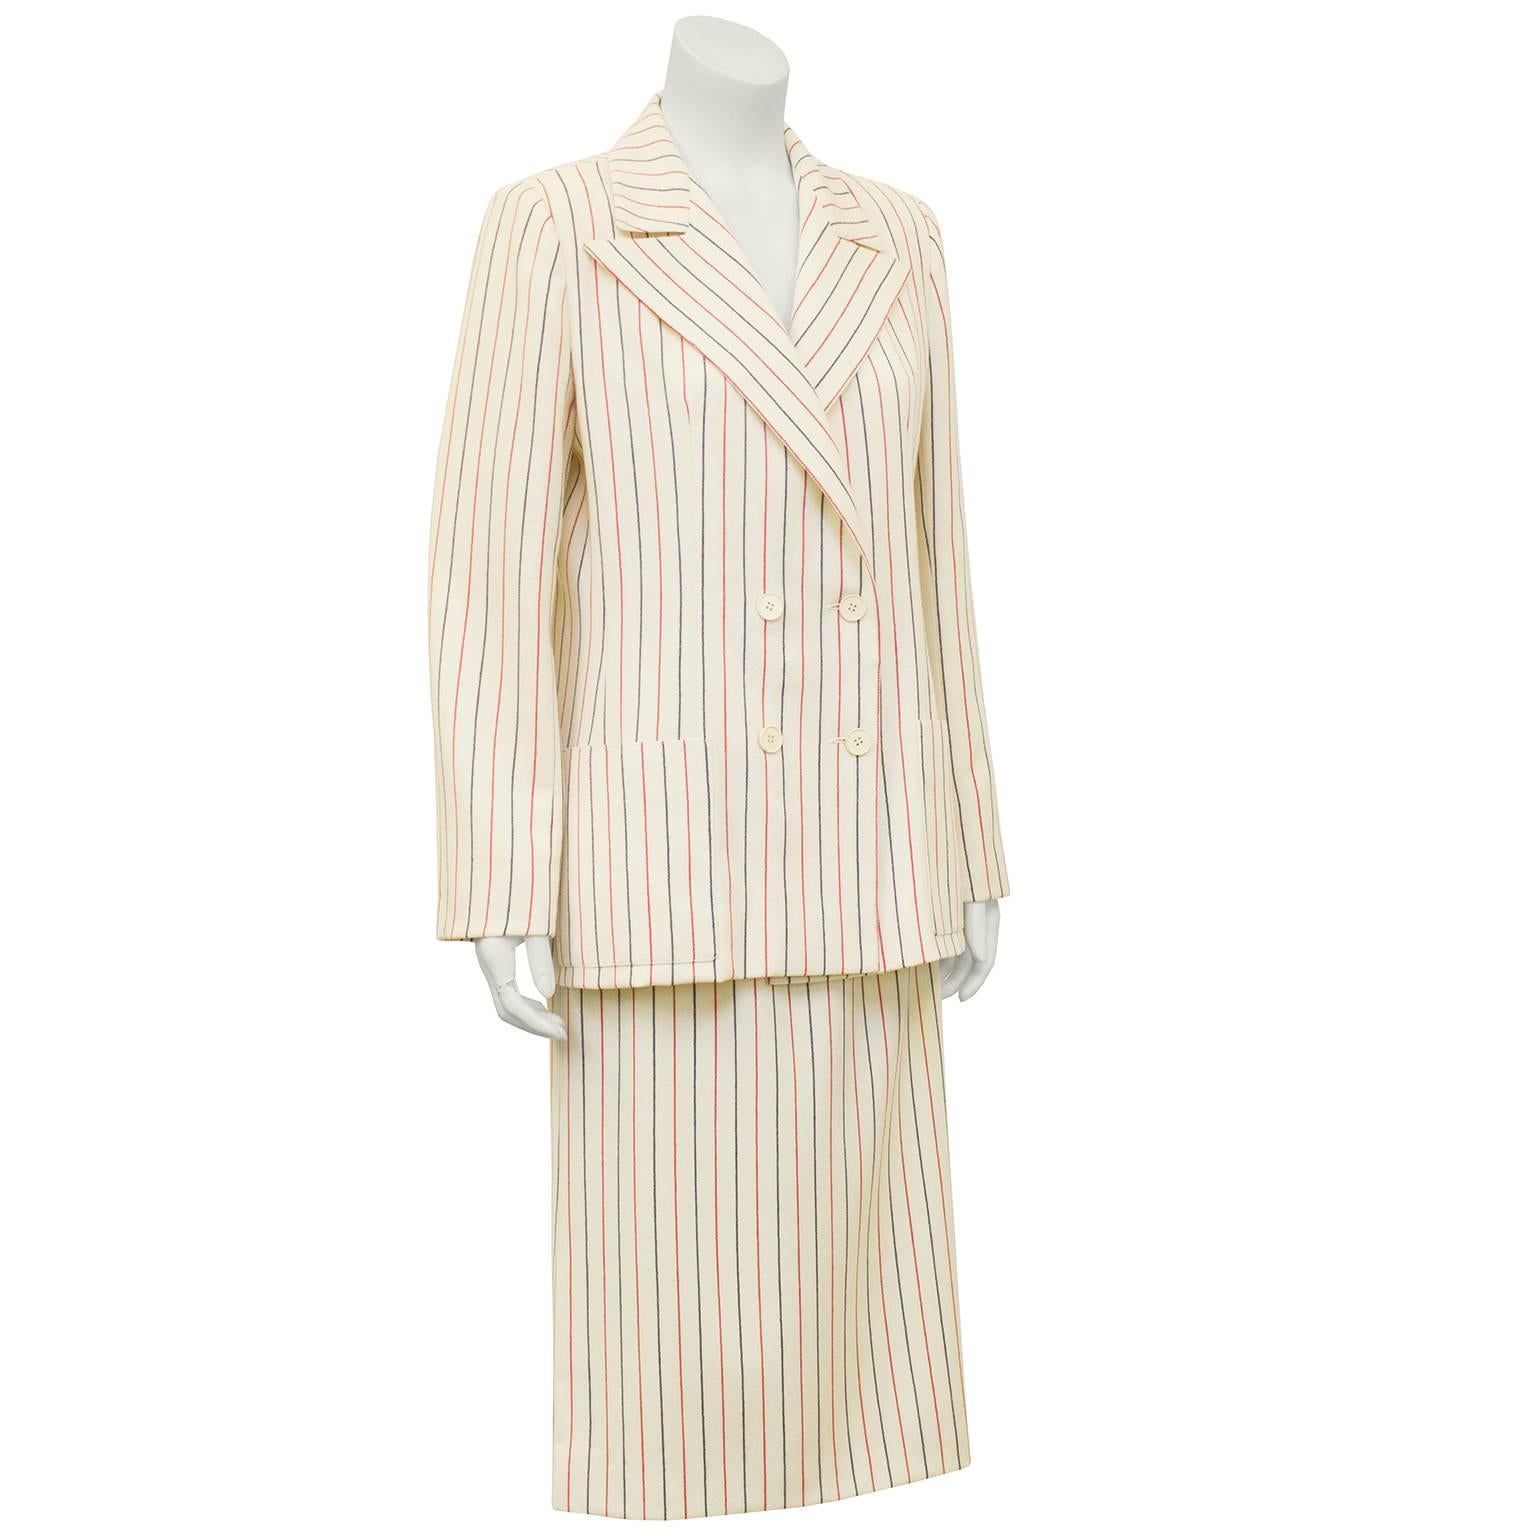 costume Scherrer des années 1980, crème avec jupe en laine à rayures rouges et bleu marine. Veste croisée avec boutons crème, col surdimensionné et poches plaquées. Jupe à taille haute, longueur genou. Peut être utilisé ensemble ou séparément.